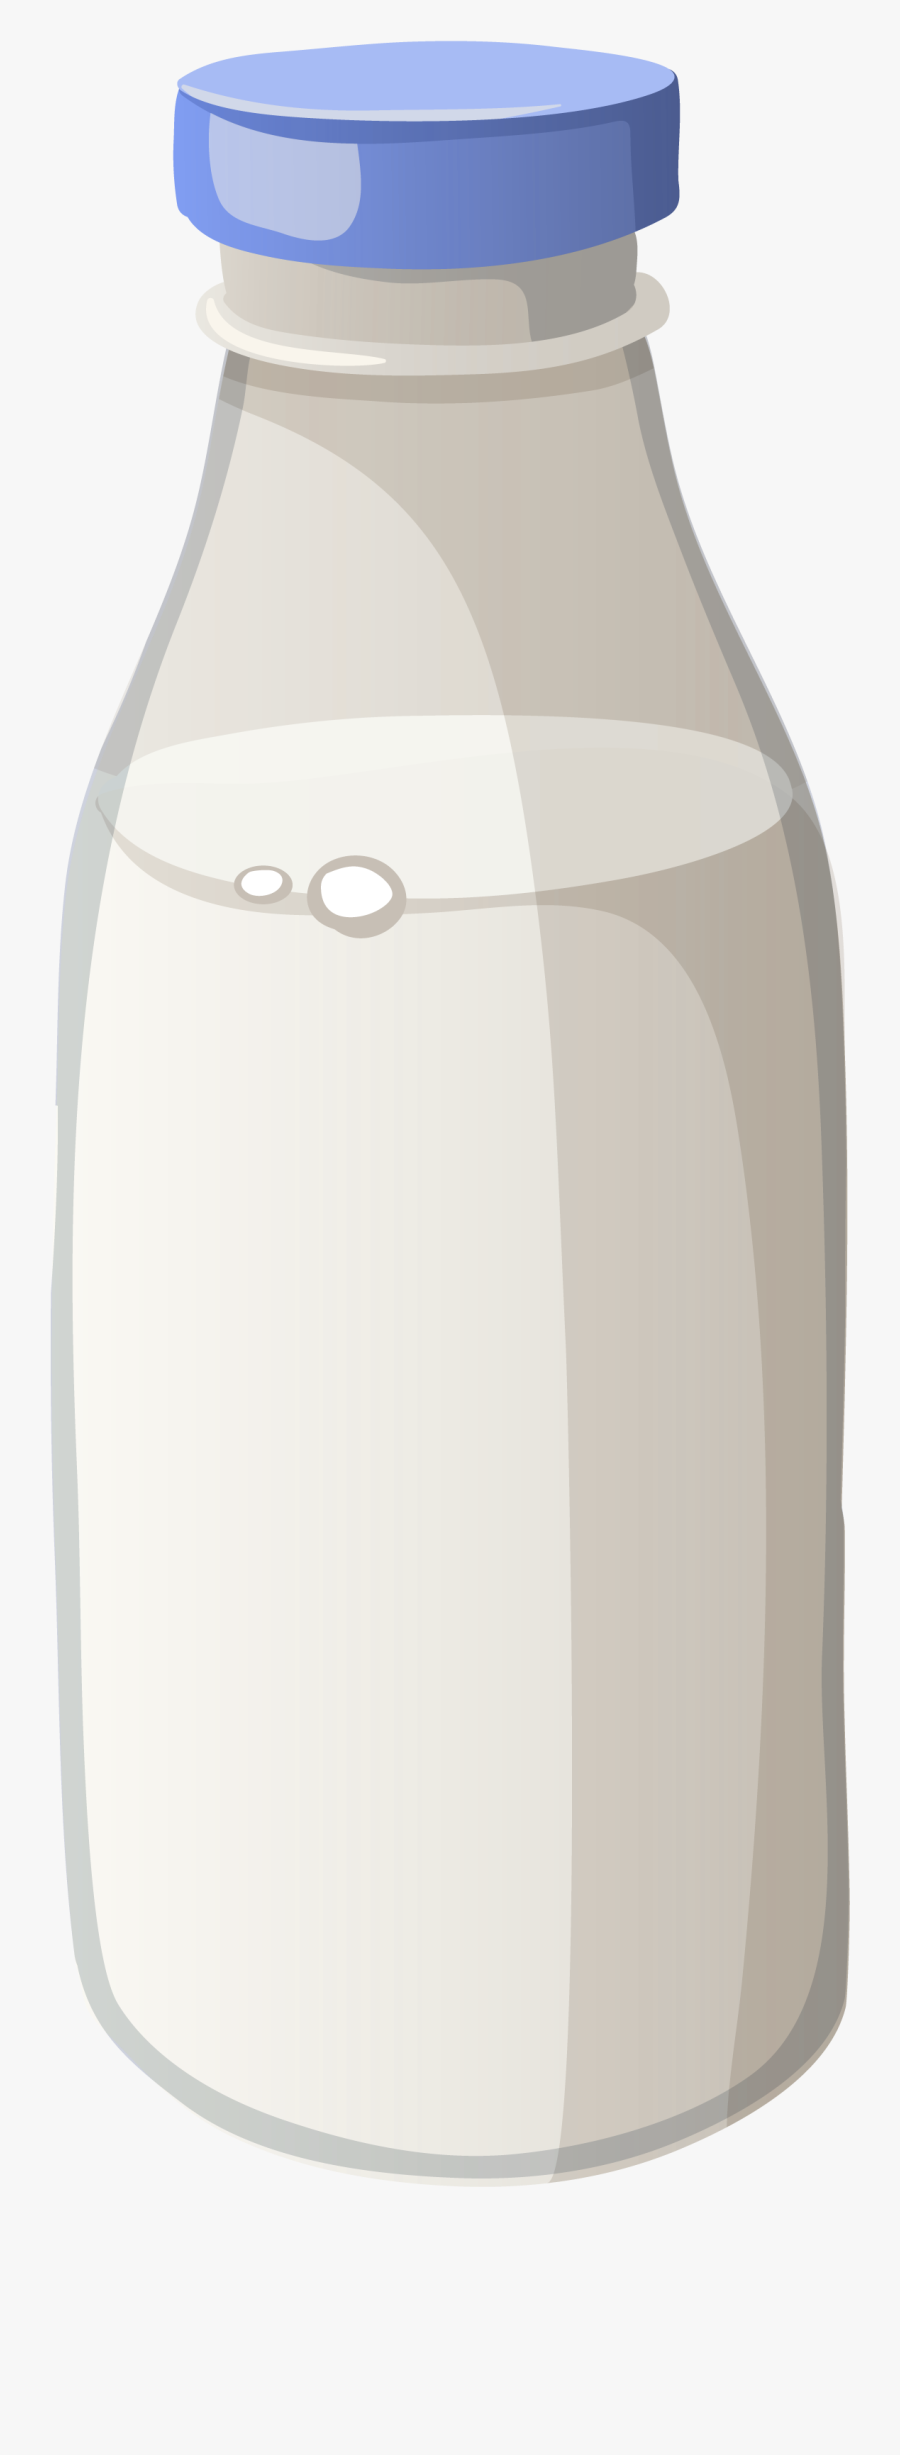 Download Free Bottle Image - Milk Bottle Transparent Background, Transparent Clipart